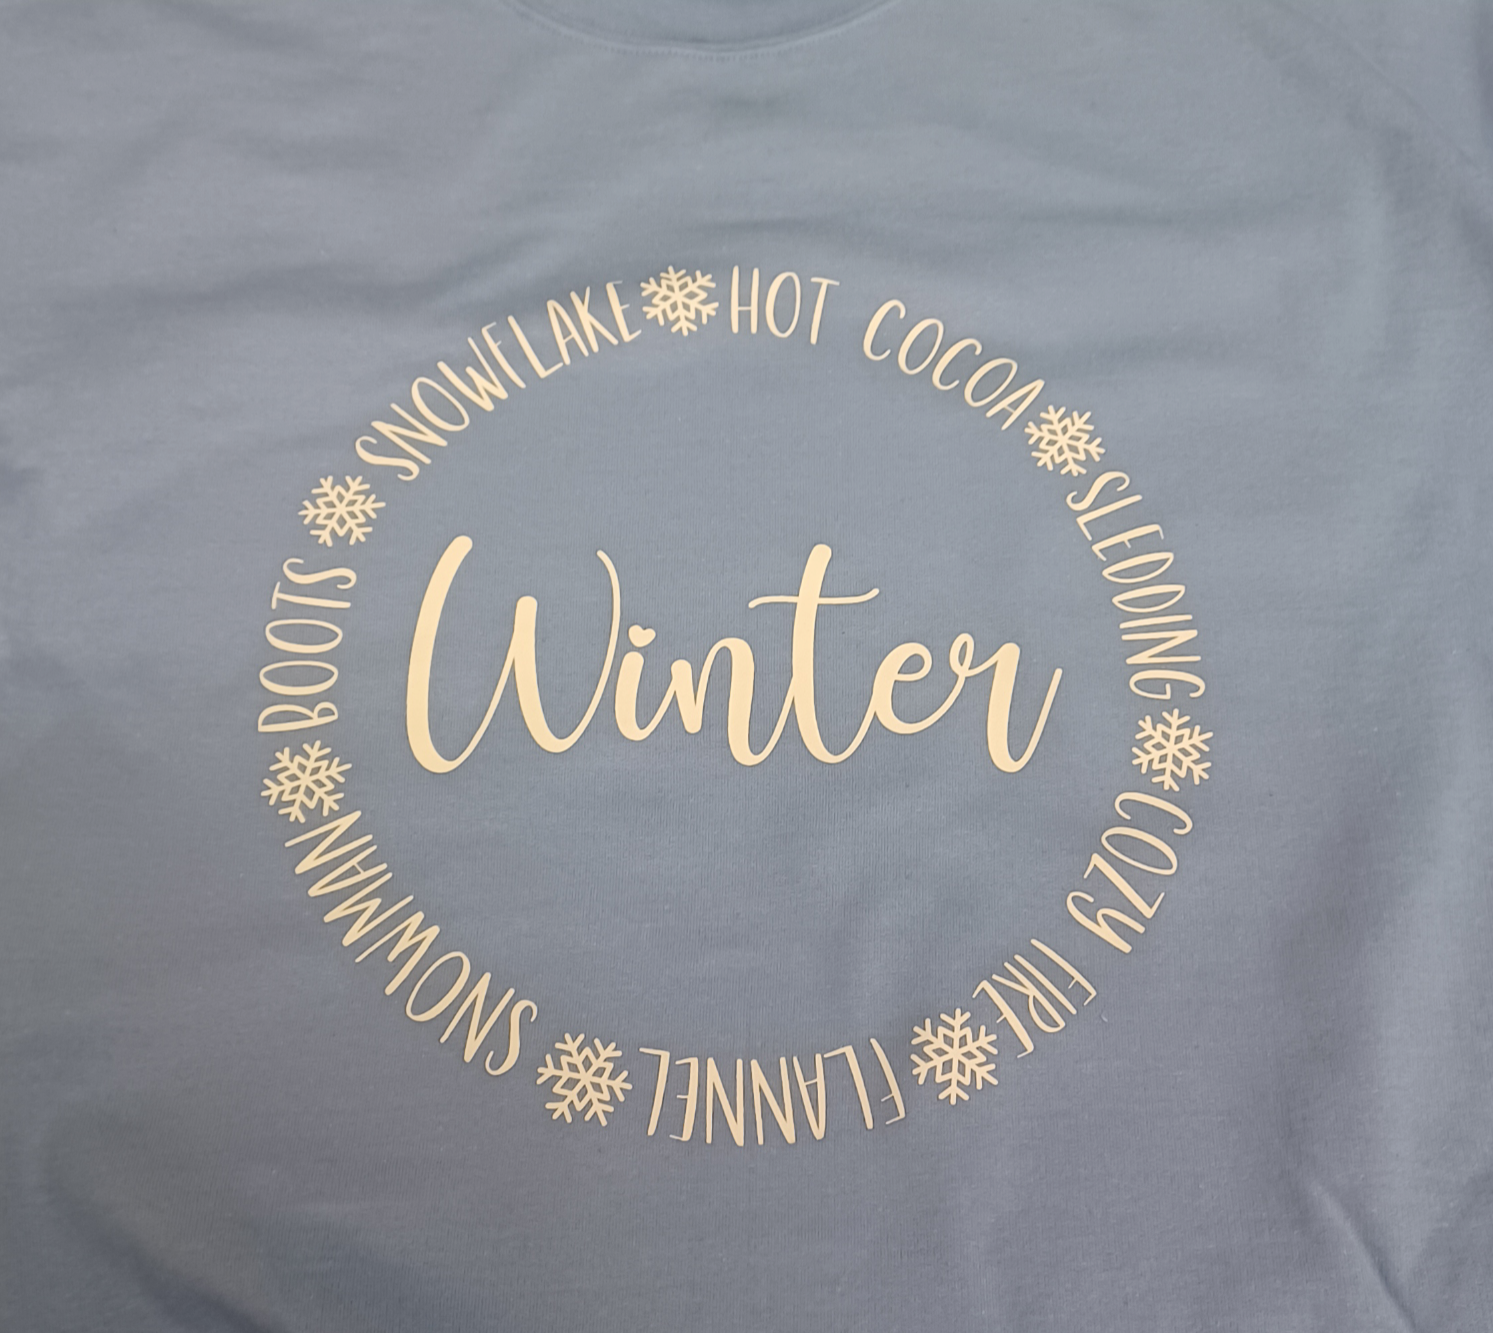 Winter Sweatshirt